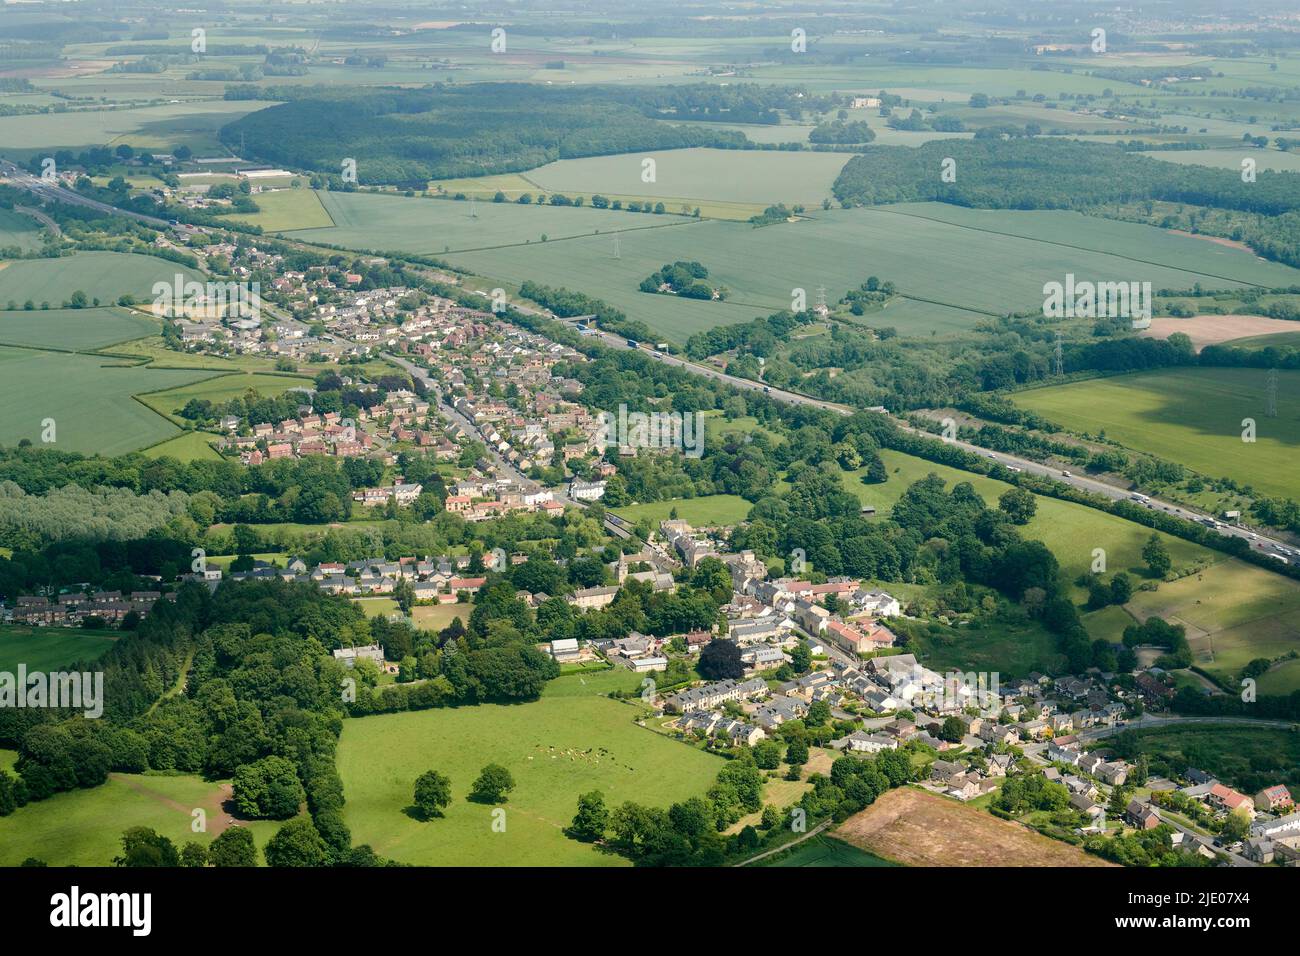 Il villaggio di Aberford, West Yorkshire, Inghilterra settentrionale, percorso del vecchio A1, adiacente alla nuova autostrada A1, fucilato dall'aria Foto Stock